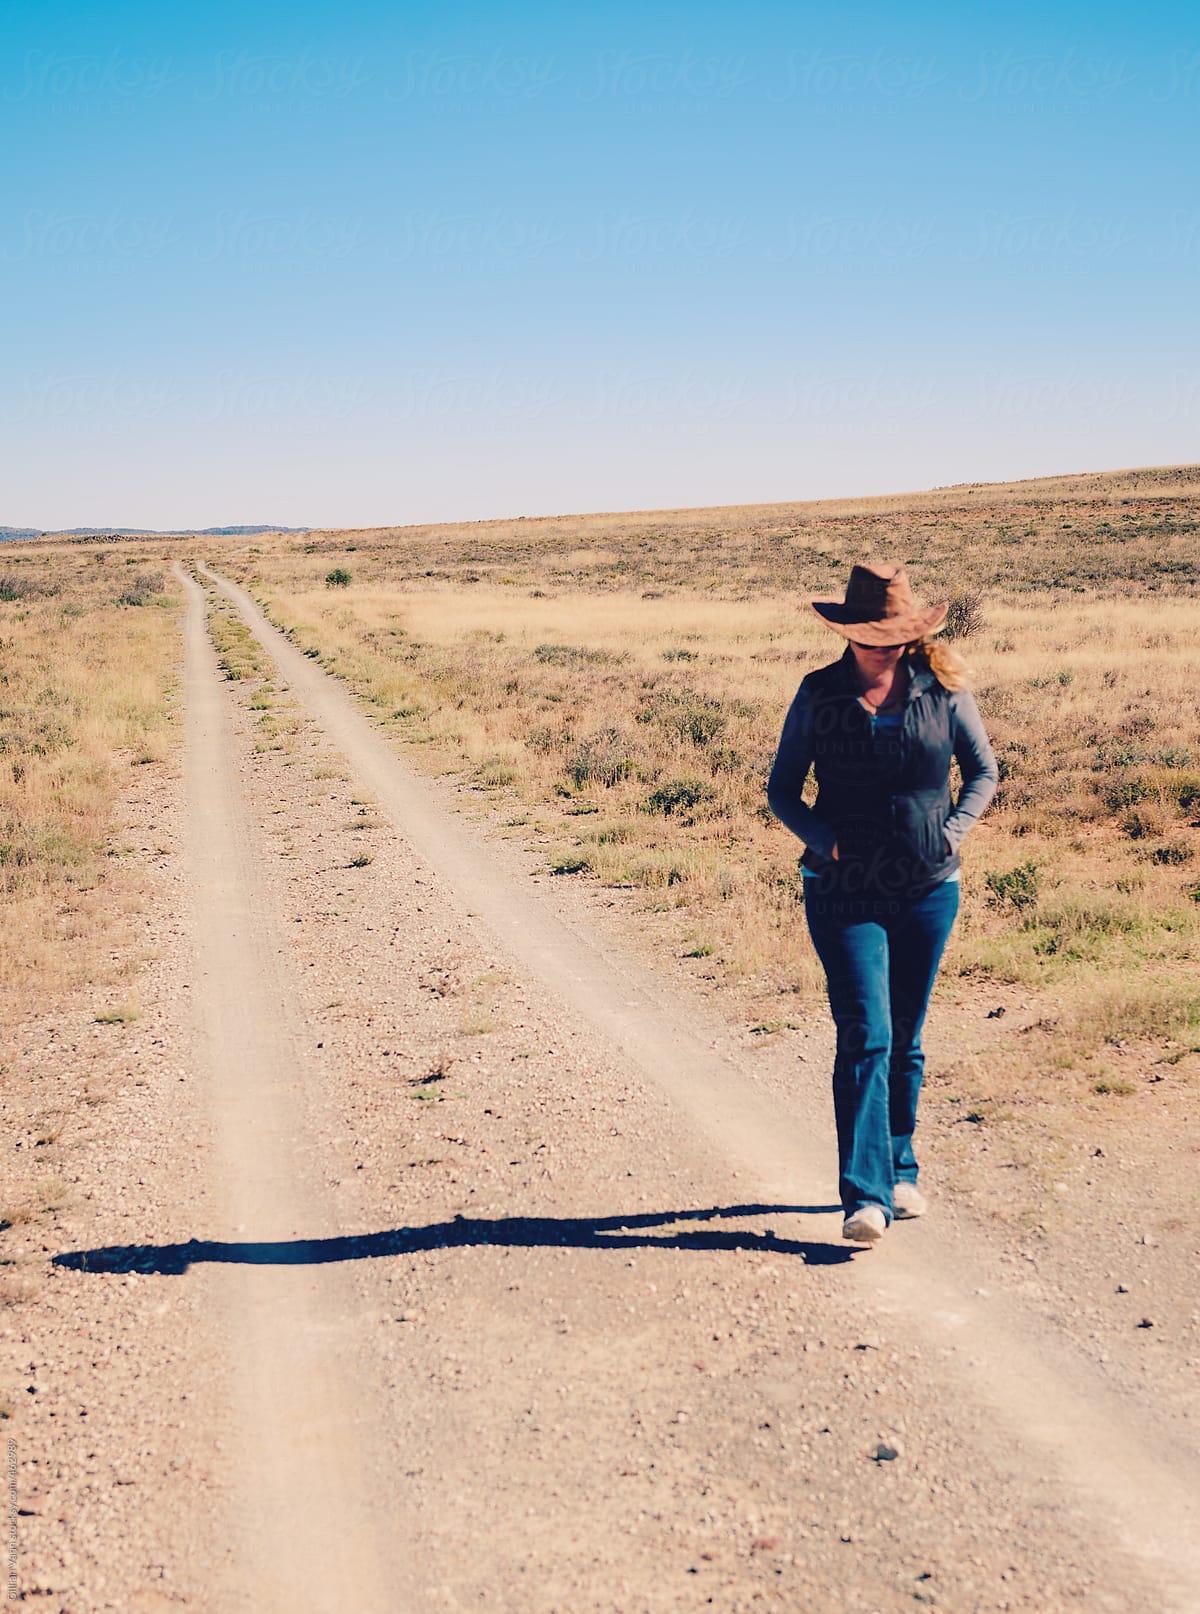 woman walking on dirt road in a flat, dry, rural scene